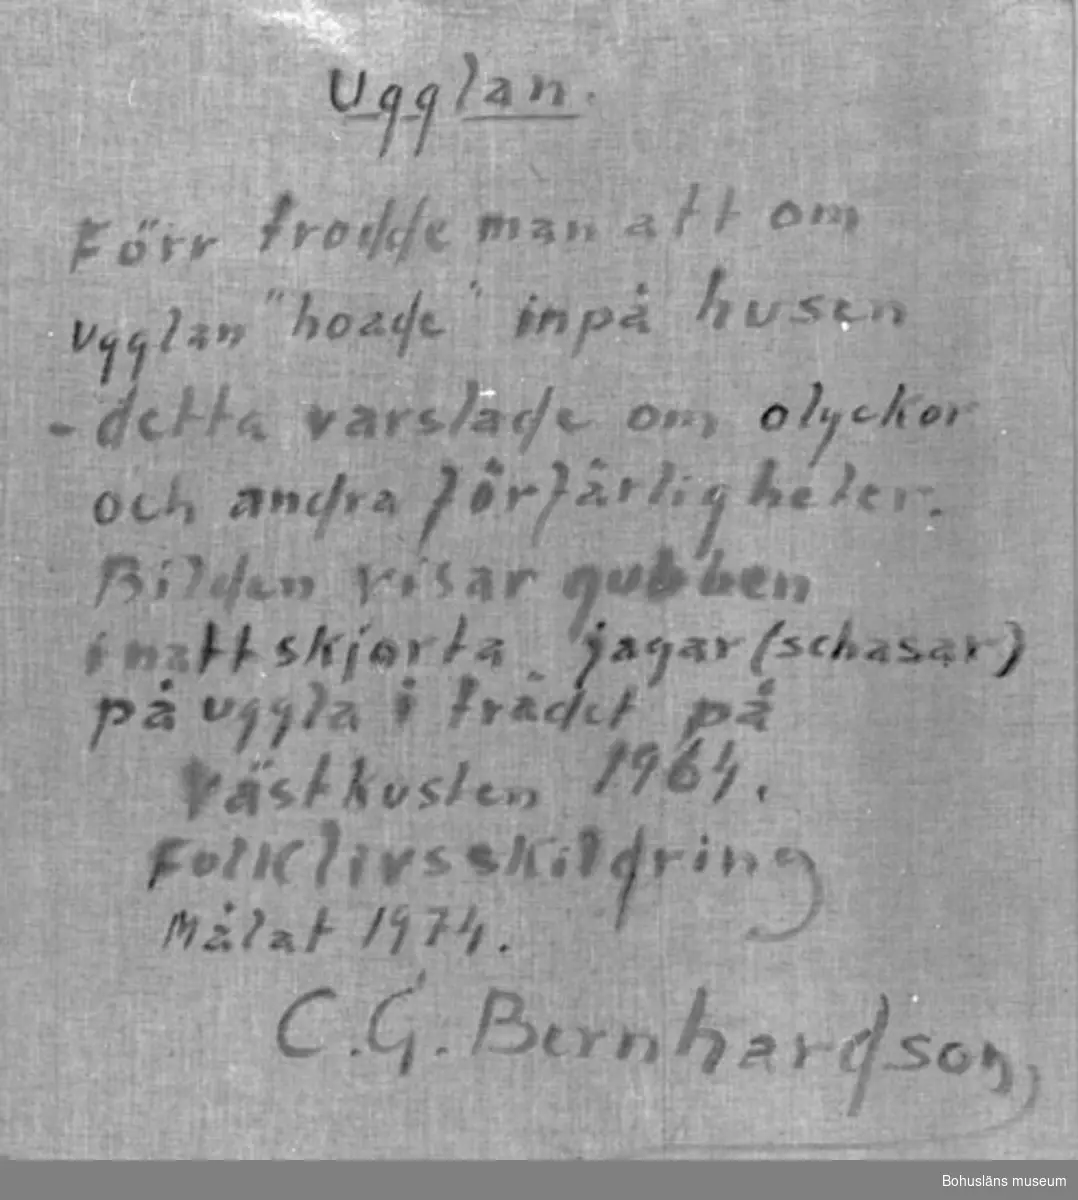 Baksidestext: 
"Ugglan. 
Förr trodde man att om ugglan "hoade" inpå husen - detta  varslade om olyckor och andra förfärligheter. Bilden visar gubben i nattskjorta jagar (schasar) på uggla i trädet.
Västkusten 1964.
Folklivsskildring
Målat 1974.
C.G. Bernhardson."

Litt.: Bernhardson, C.G.: Bohuslänsk sed och folktro, Uddevalla, 1982, s. 131. Titel i boken: Nattuggla.

Övrig historik; se CGB001.